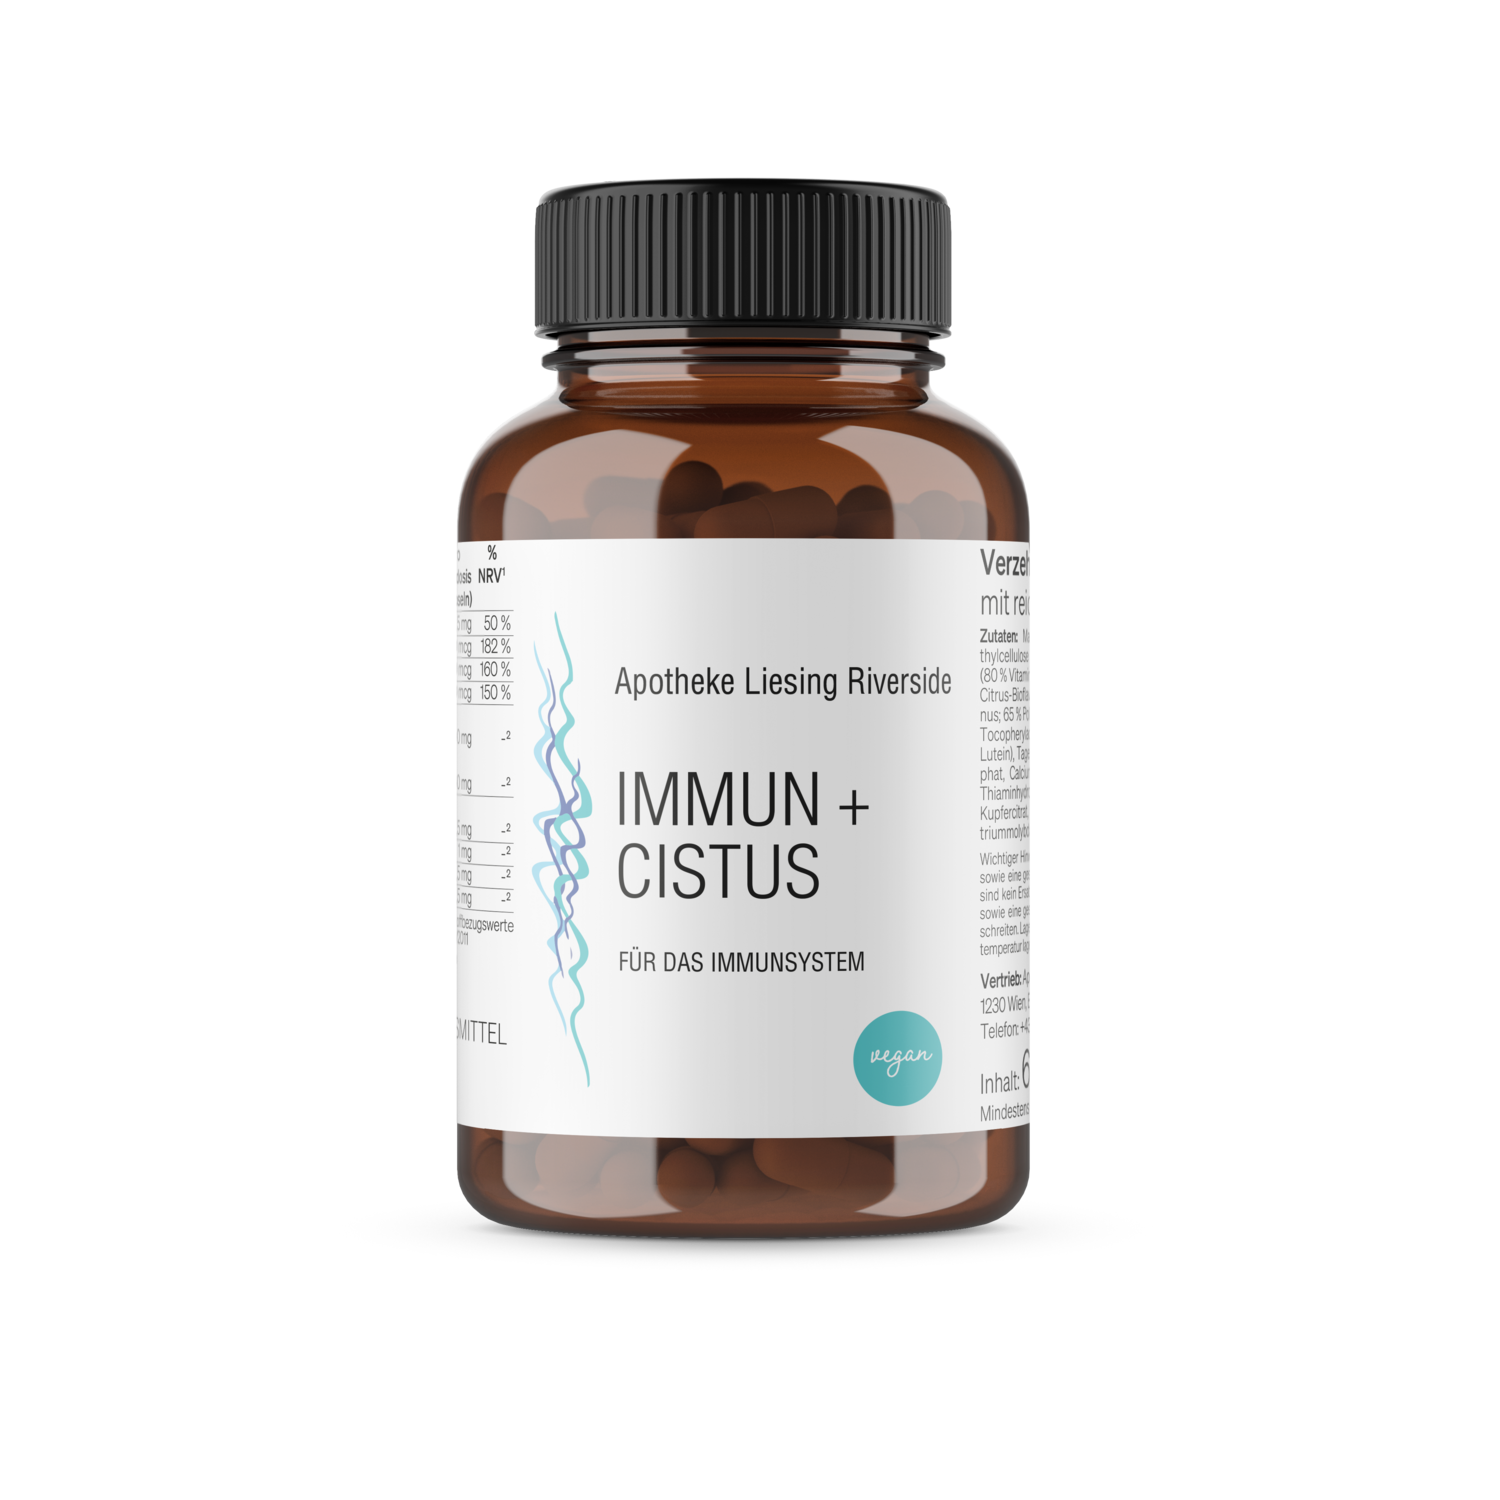 Immun + Cistus